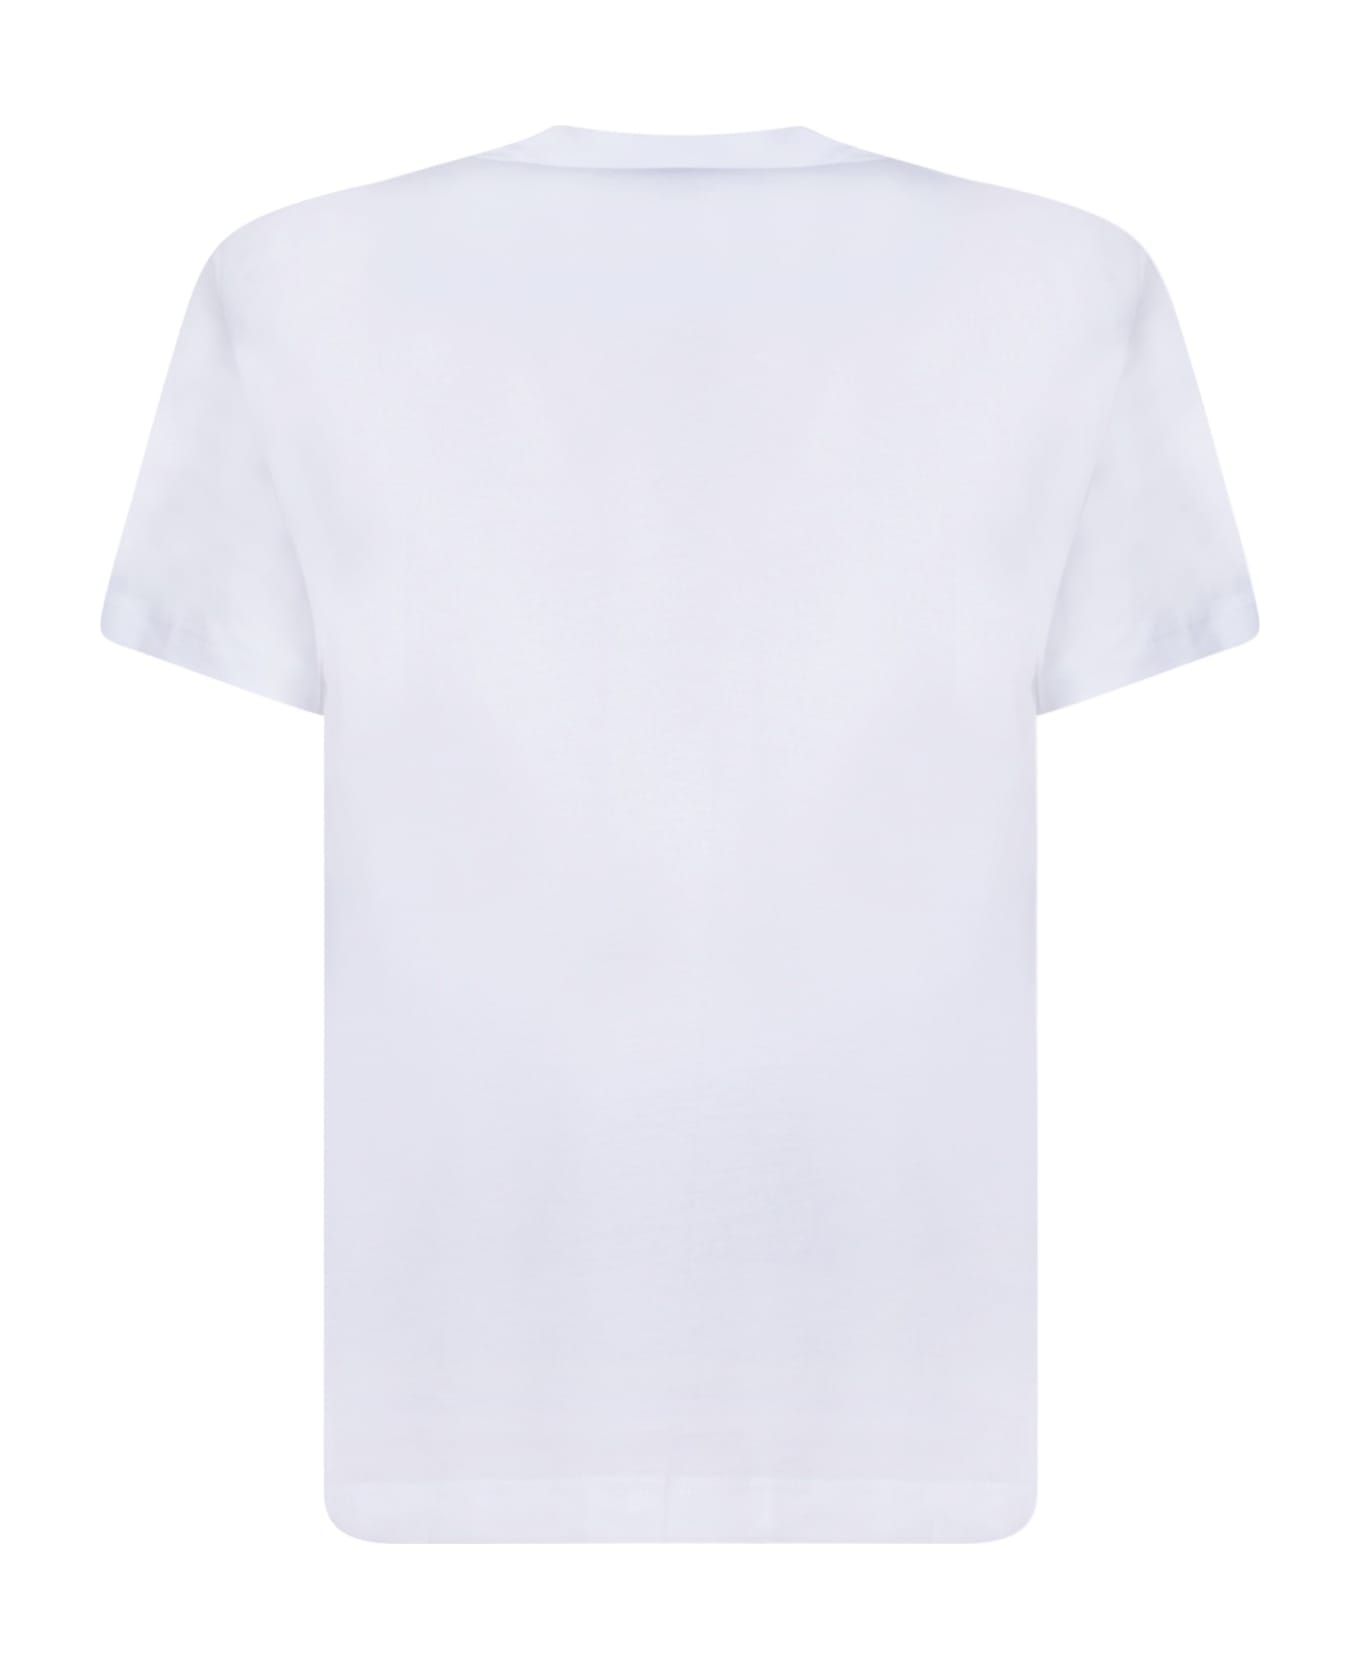 Comme des Garçons Shirt Marilyng White T-shirt - White シャツ